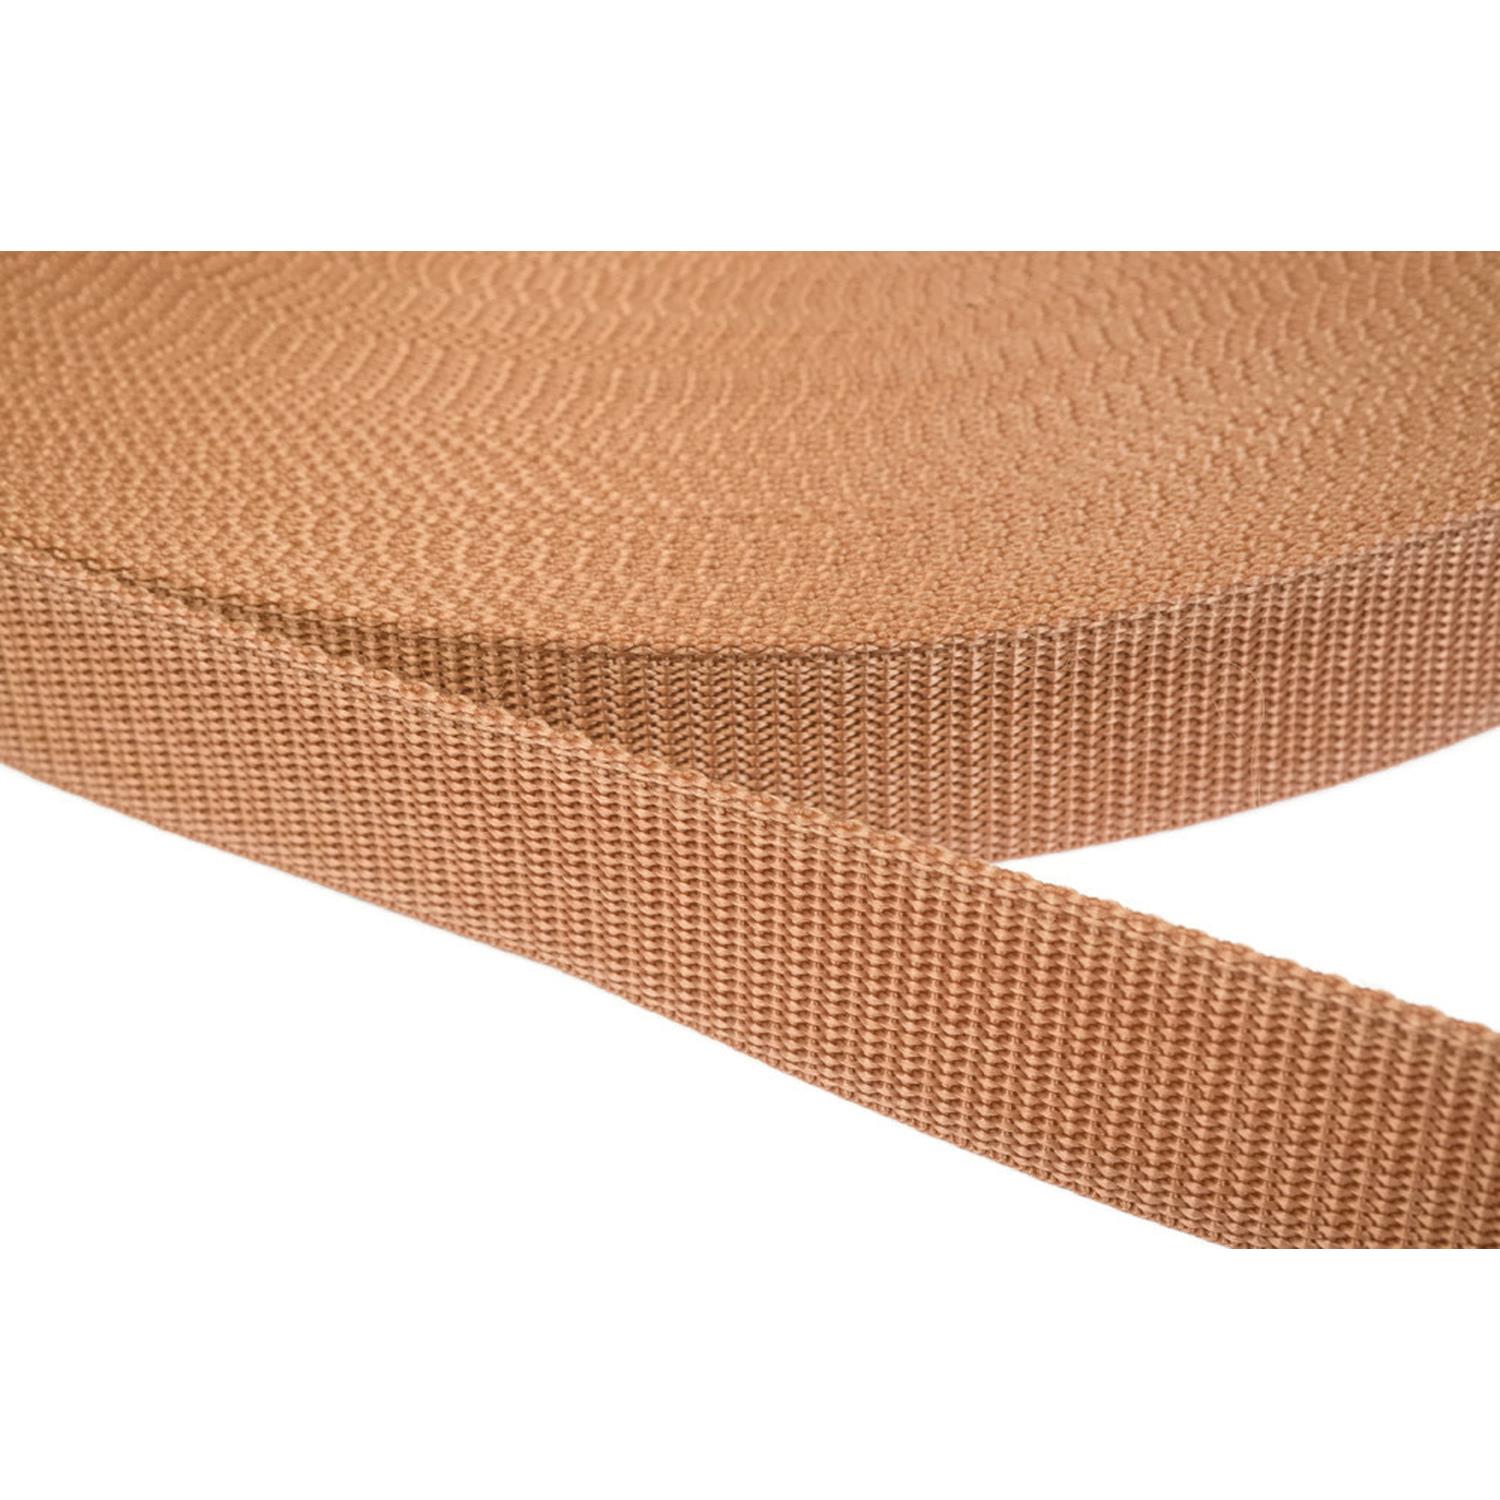 Gurtband 25mm breit aus Polypropylen in 41 Farben 06 - hellbraun 12 Meter